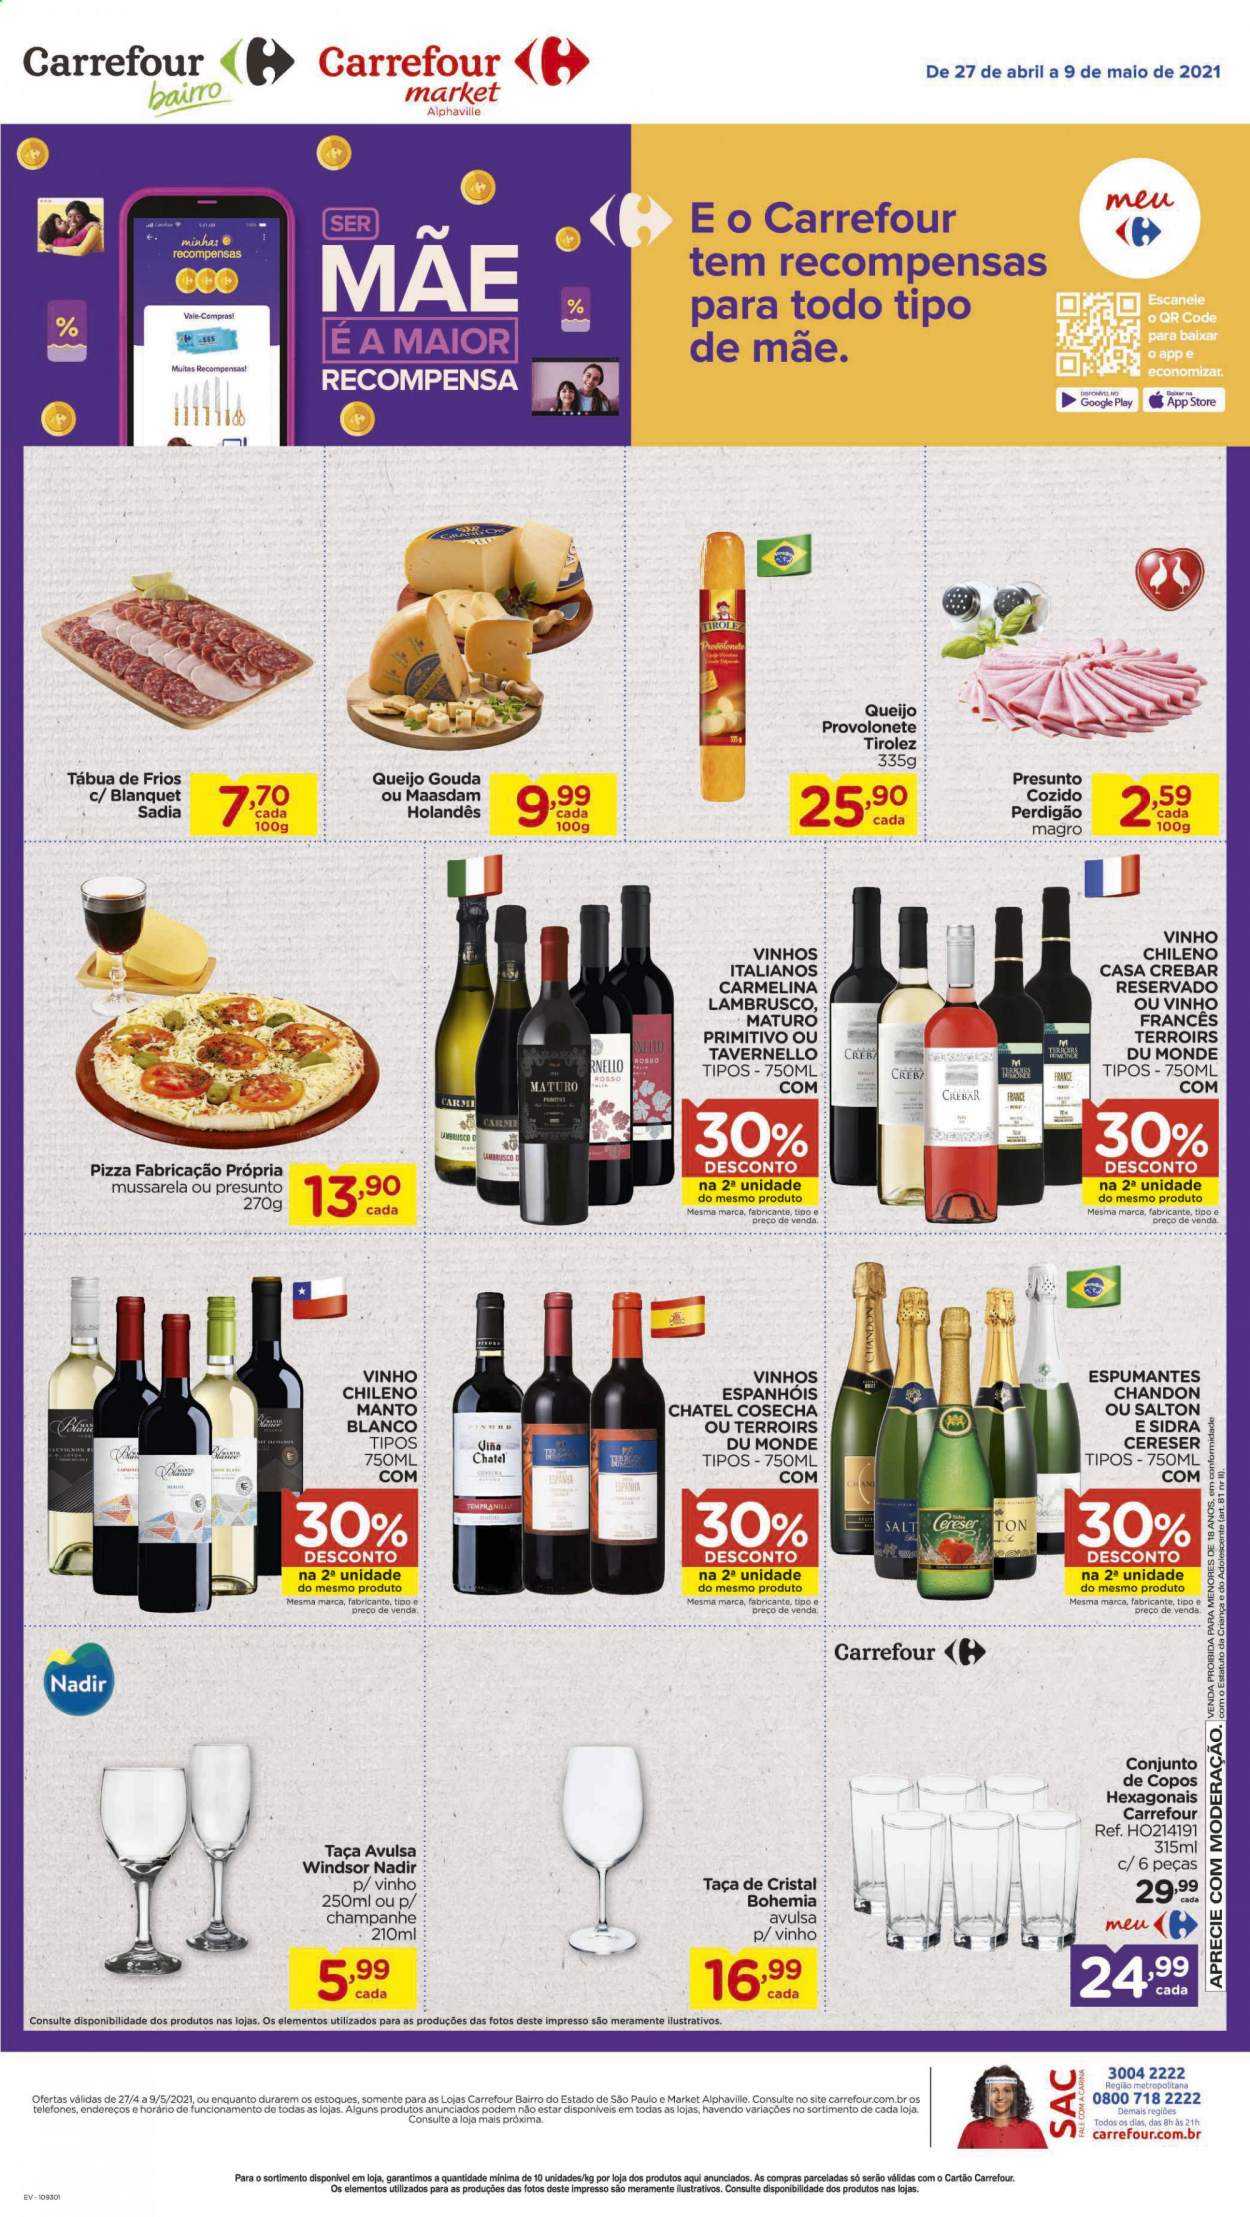 thumbnail - Folheto Carrefour - 27/04/2021 - 09/05/2021 - Produtos em promoção - Perdigão, pizza, presunto, gouda, mozzarella, maasdam, vinho, vinho chileno, lambrusco, Salton, sidra, taça. Página 2.